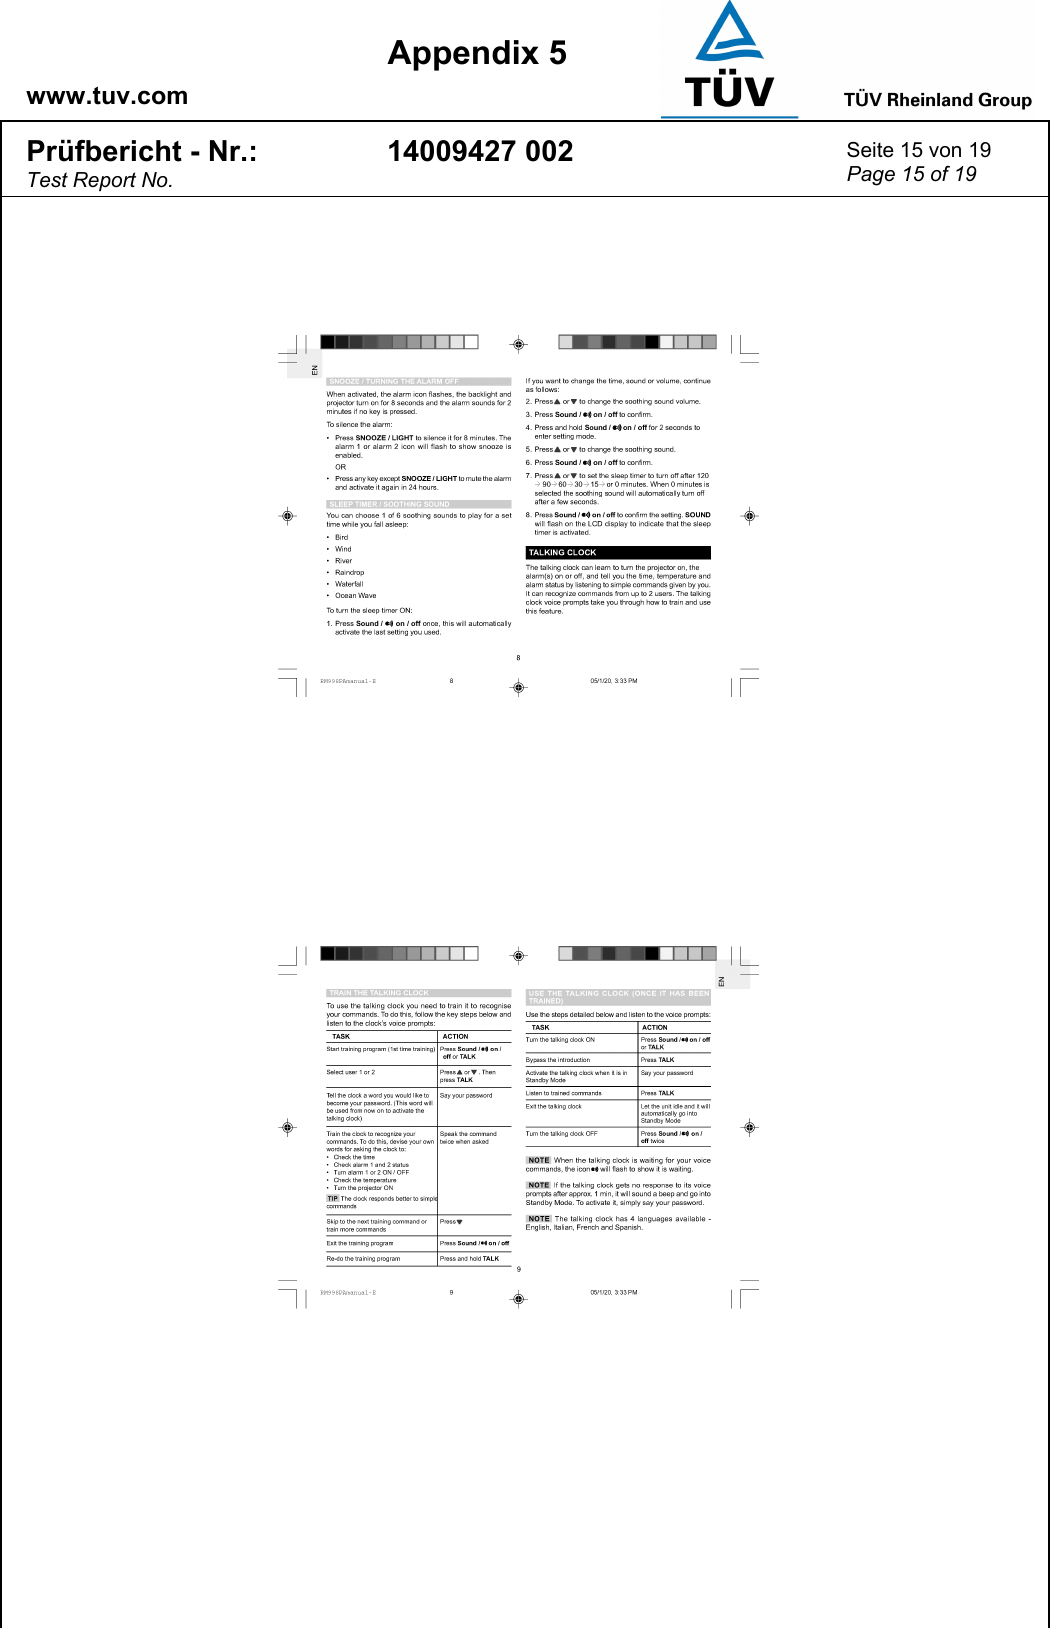    www.tuv.com  Appendix 5 Prüfbericht - Nr.: Test Report No. 14009427 002  Seite 15 von 19 Page 15 of 19   